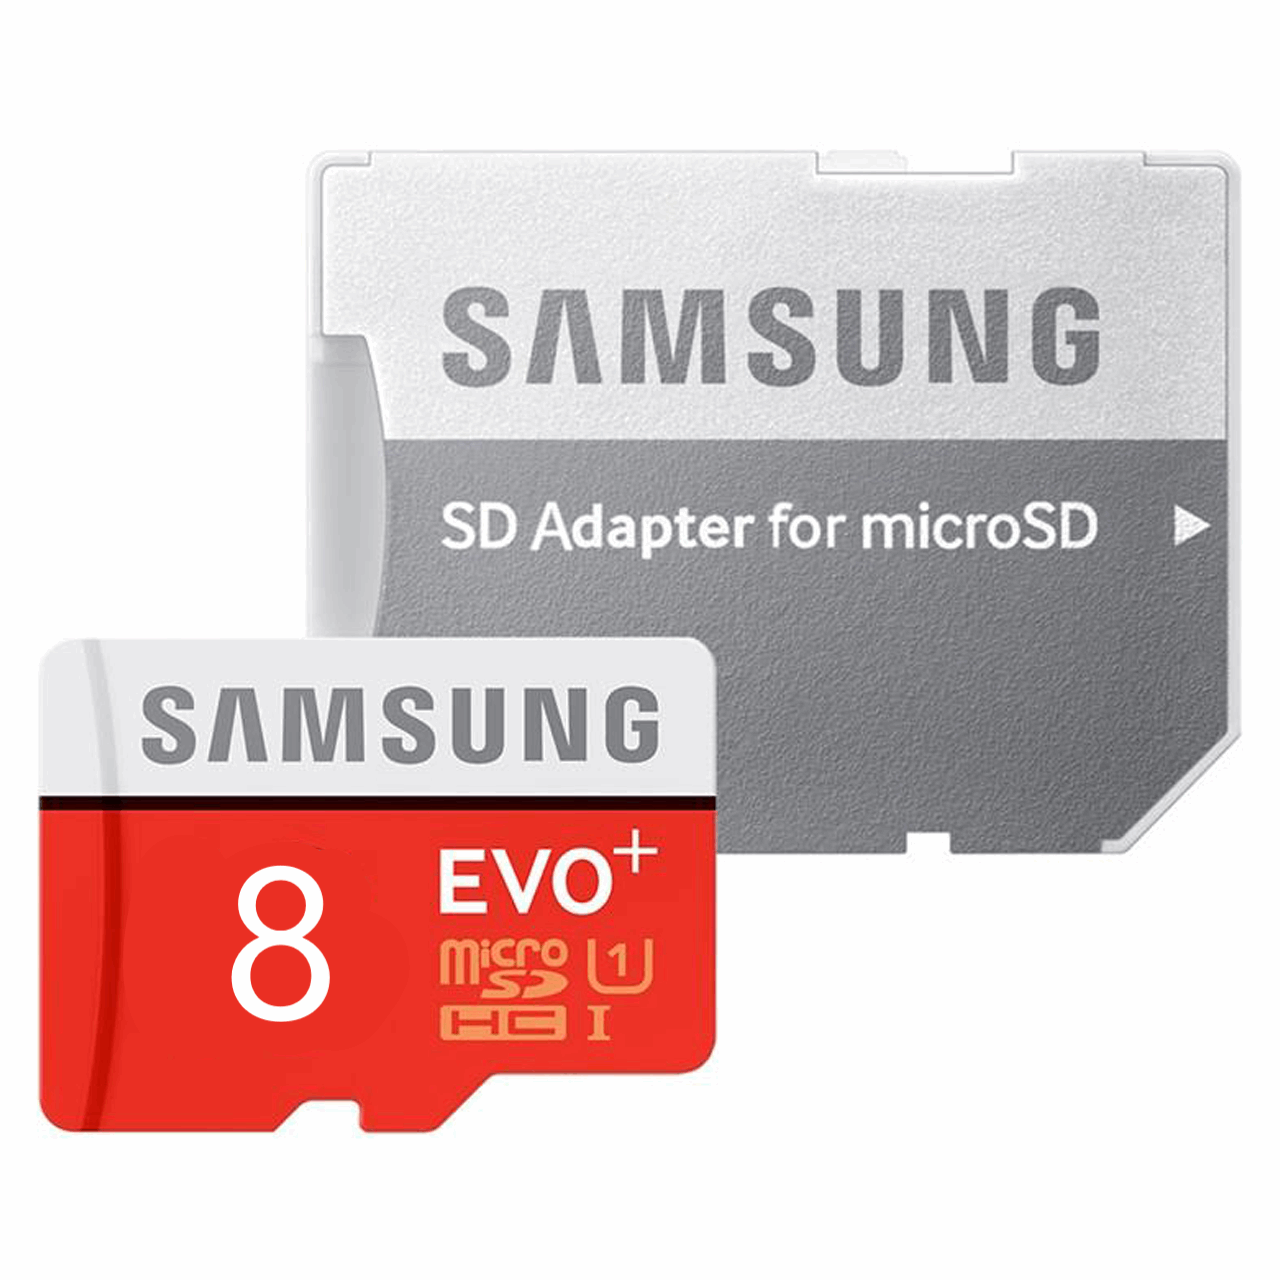 کارت حافظه microSDHC  مدل Evo Plus کلاس 10 استاندارد UHS-I U1 سرعت 80MBps همراه با آداپتور SD ظرفیت 8 گیگابایت